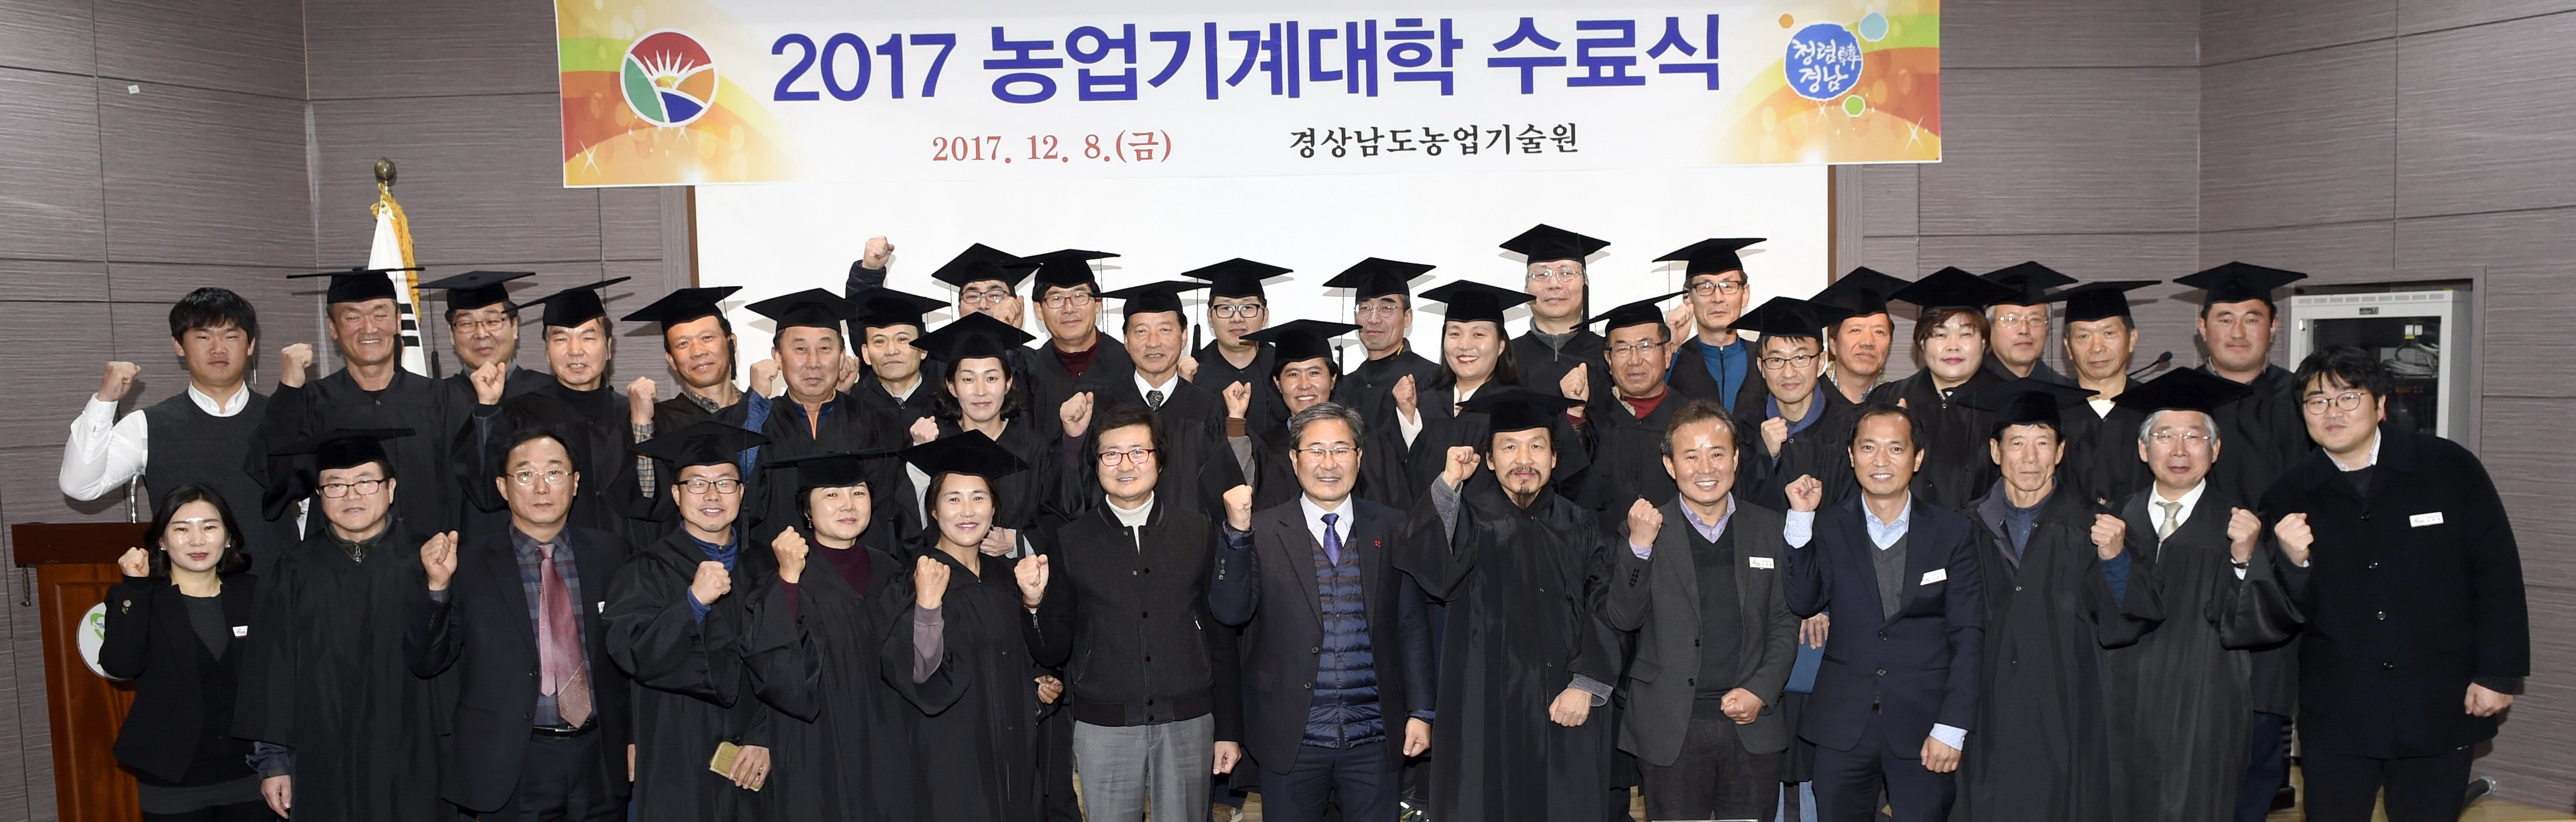 12.8.(금)경남농업기술원, 2017 농업기계대학 31명 수료생 배출 (1).jpg